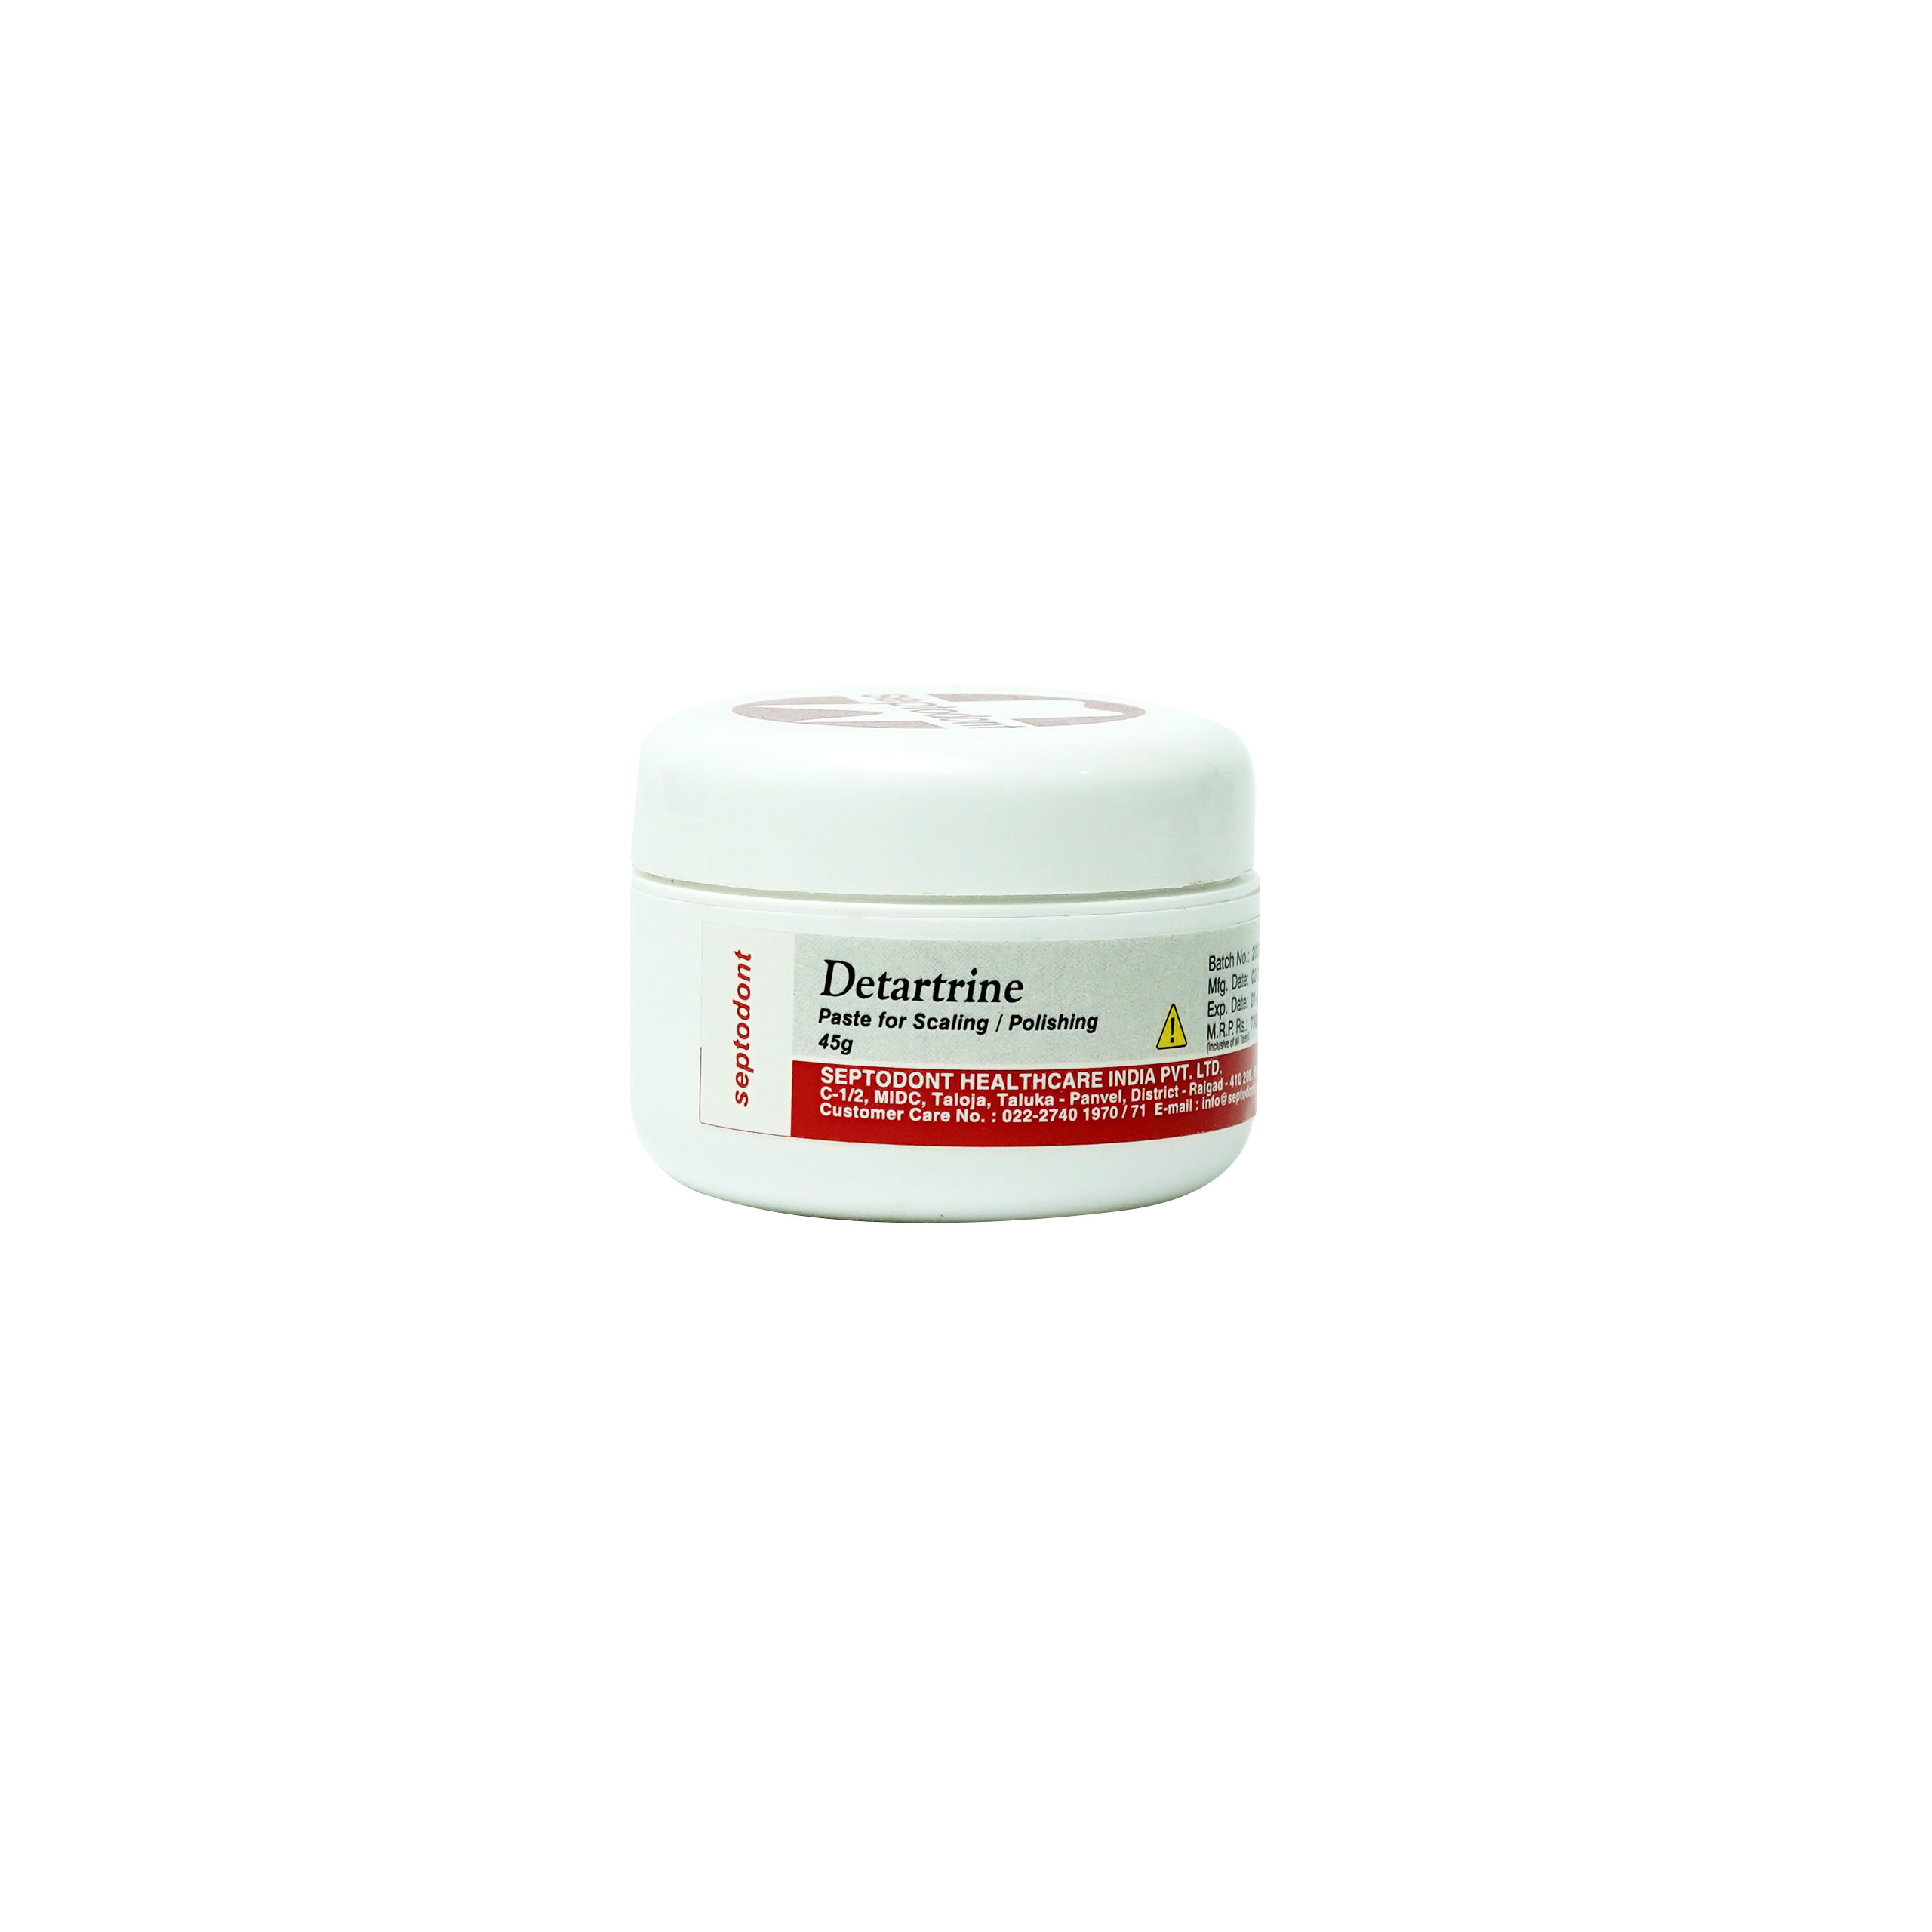 Septodont Detartrine Polishing Paste 45g Jar